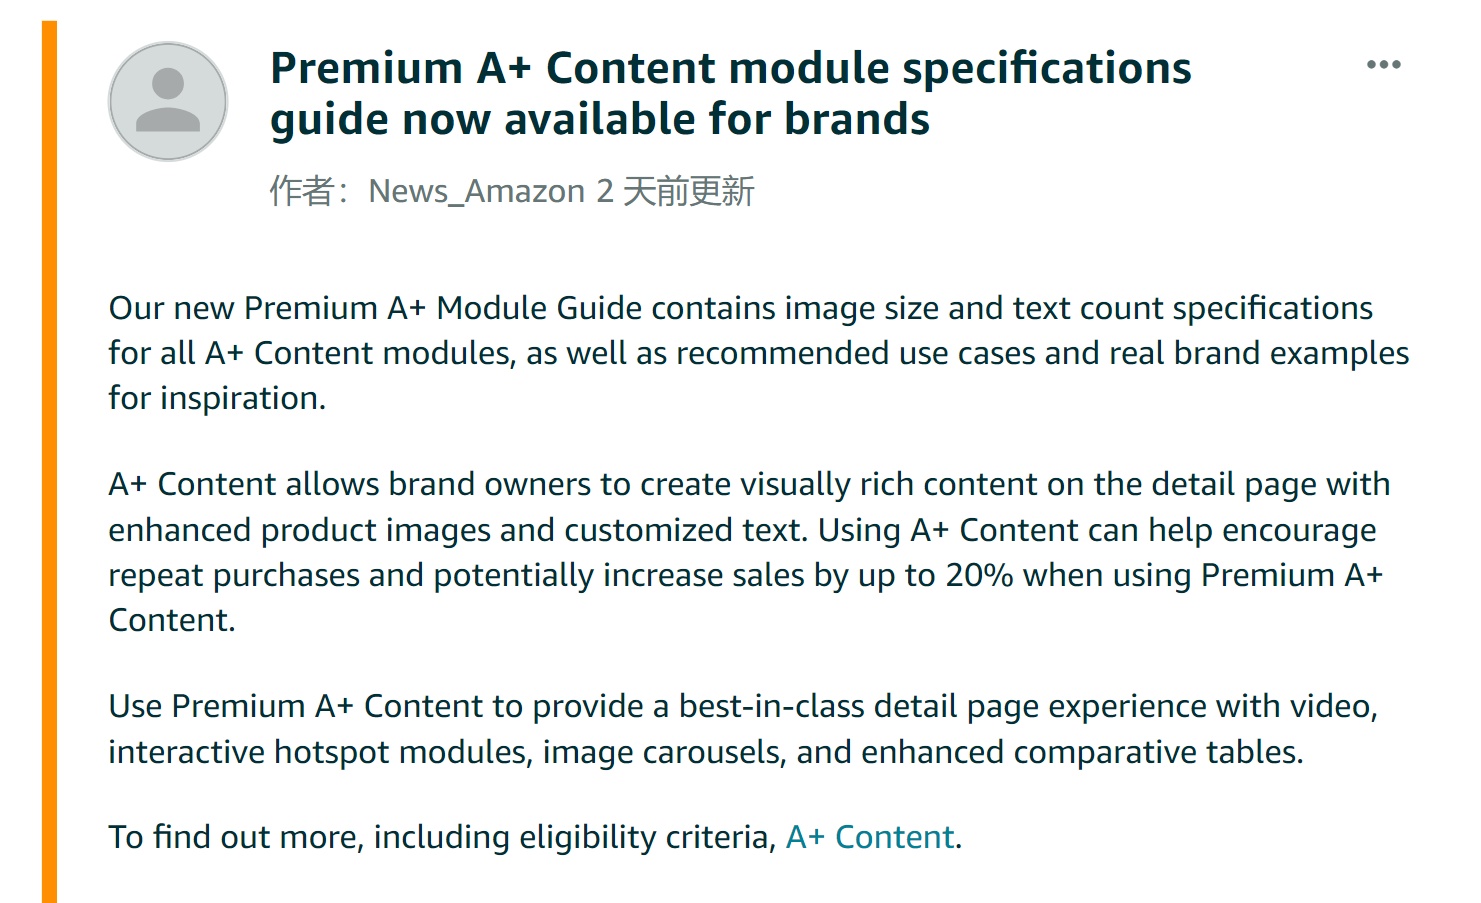 亚马逊高级A+内容模块规格指南现已可供品牌卖家使用